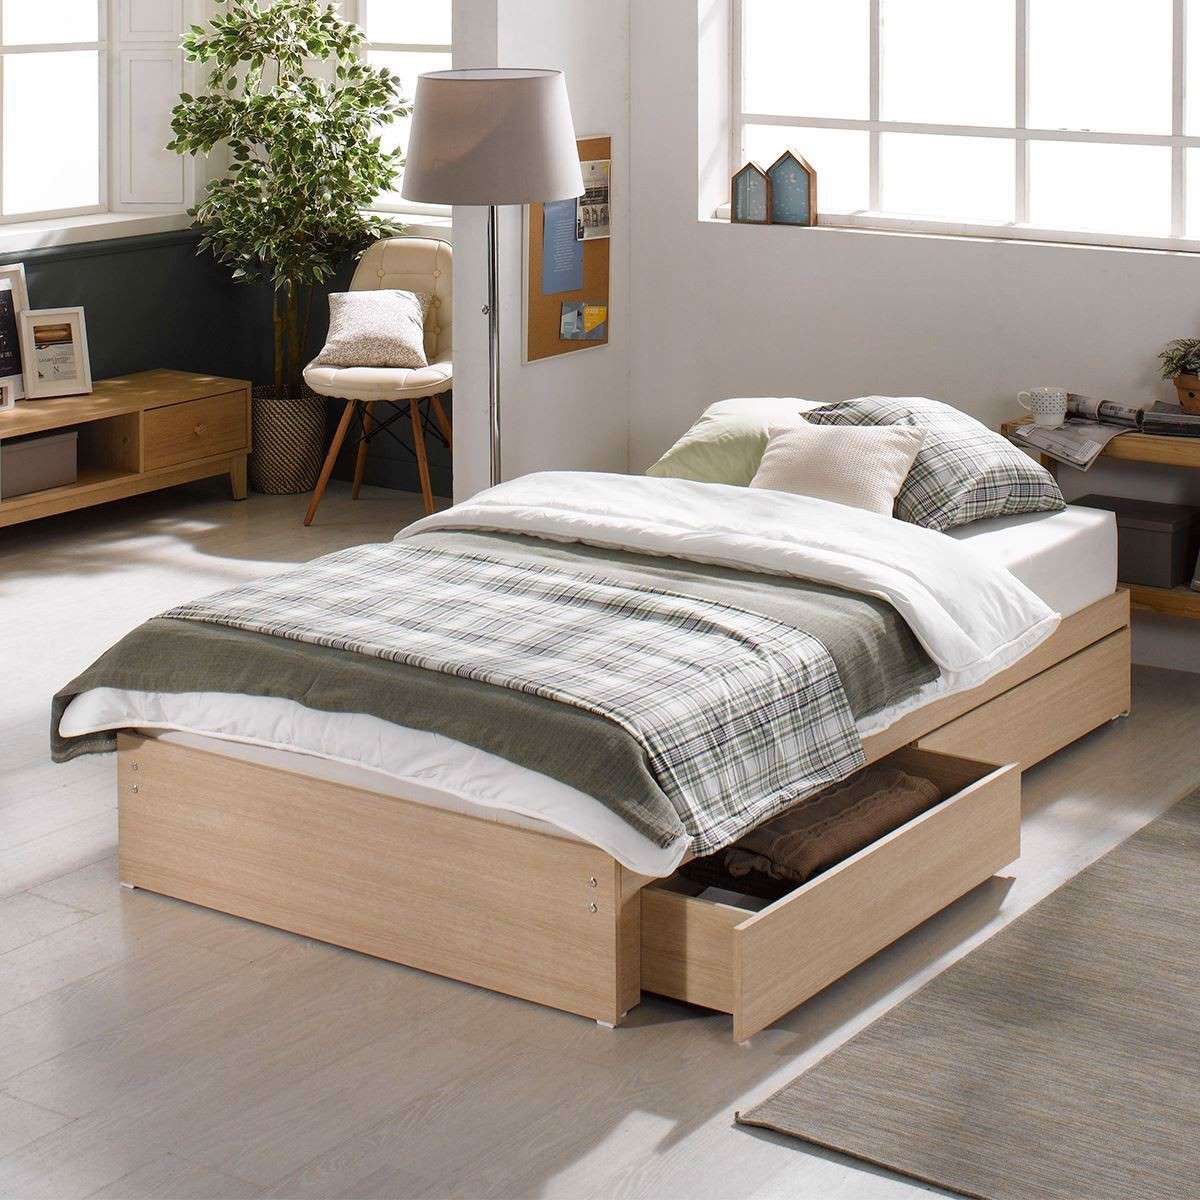 Mẫu giường ngủ gỗ 1m2 có hộc kéo tiện nghi